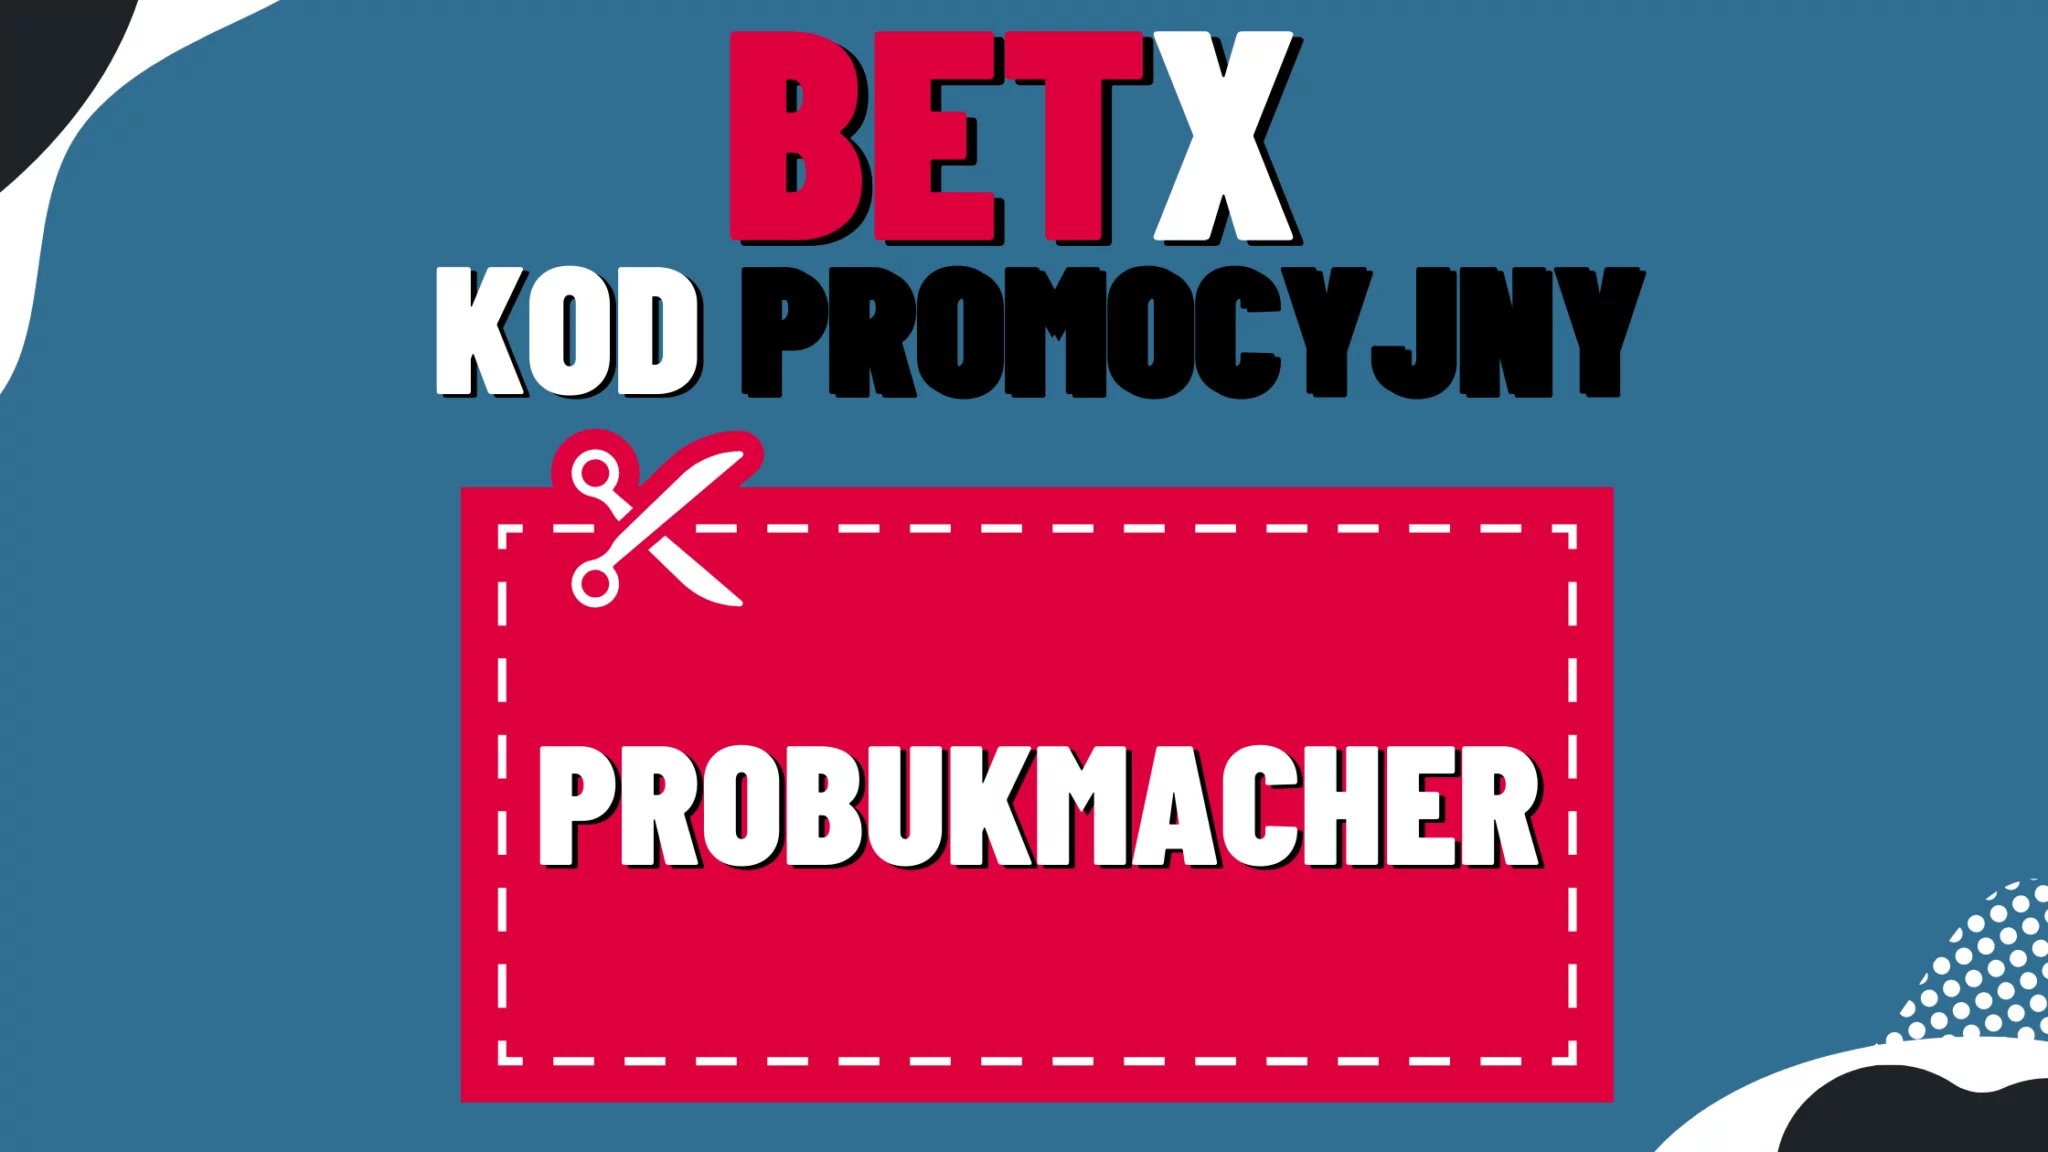 Kod promocyjny probukmacher BetX